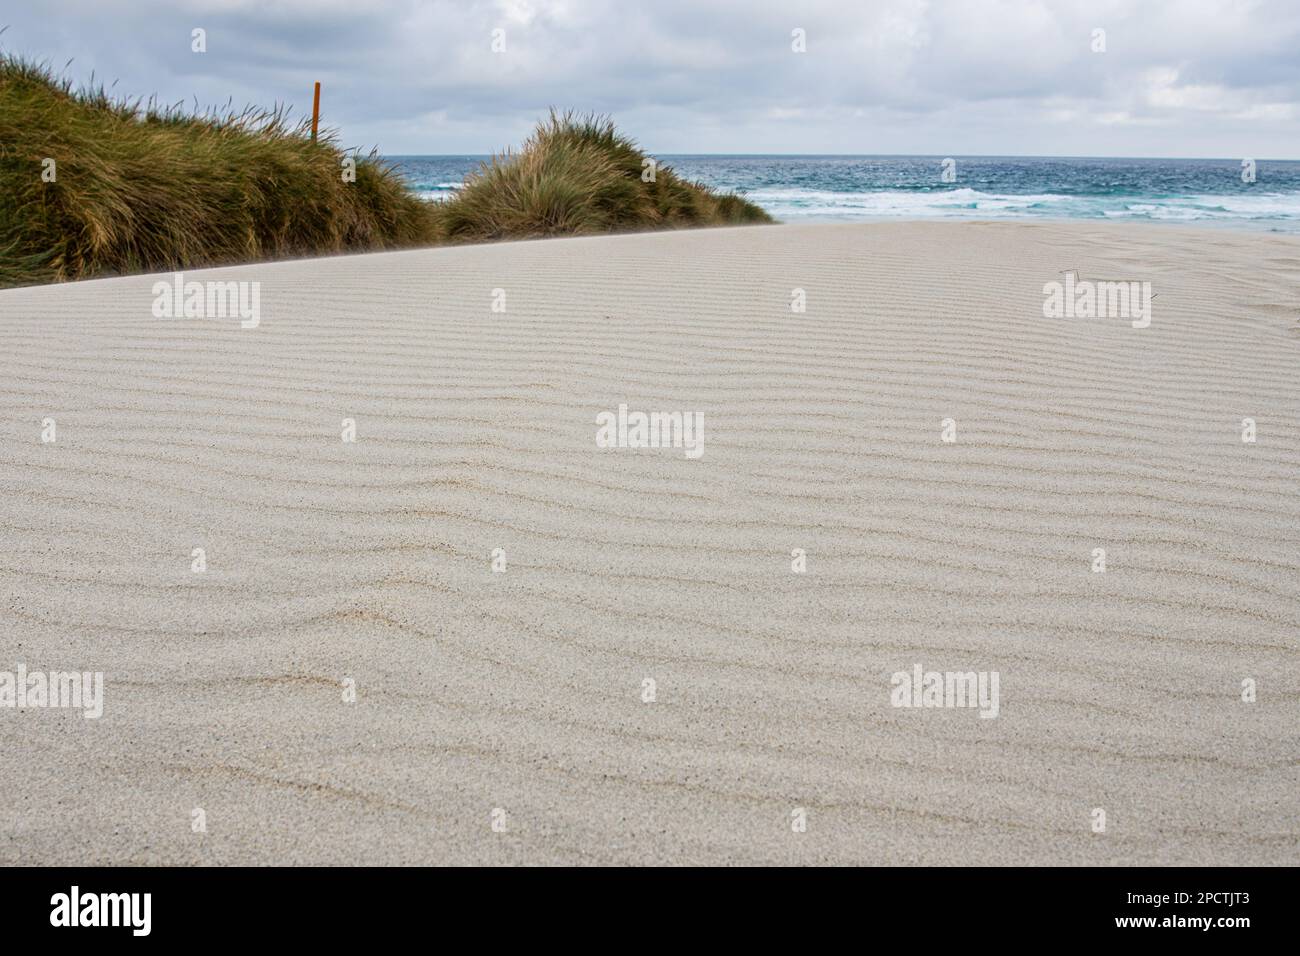 Dune de sable blanc et les motifs des ondulations dans le sable avec l'océan pacifique derrière, une scène minimaliste à Aotearoa Nouvelle-Zélande. Banque D'Images